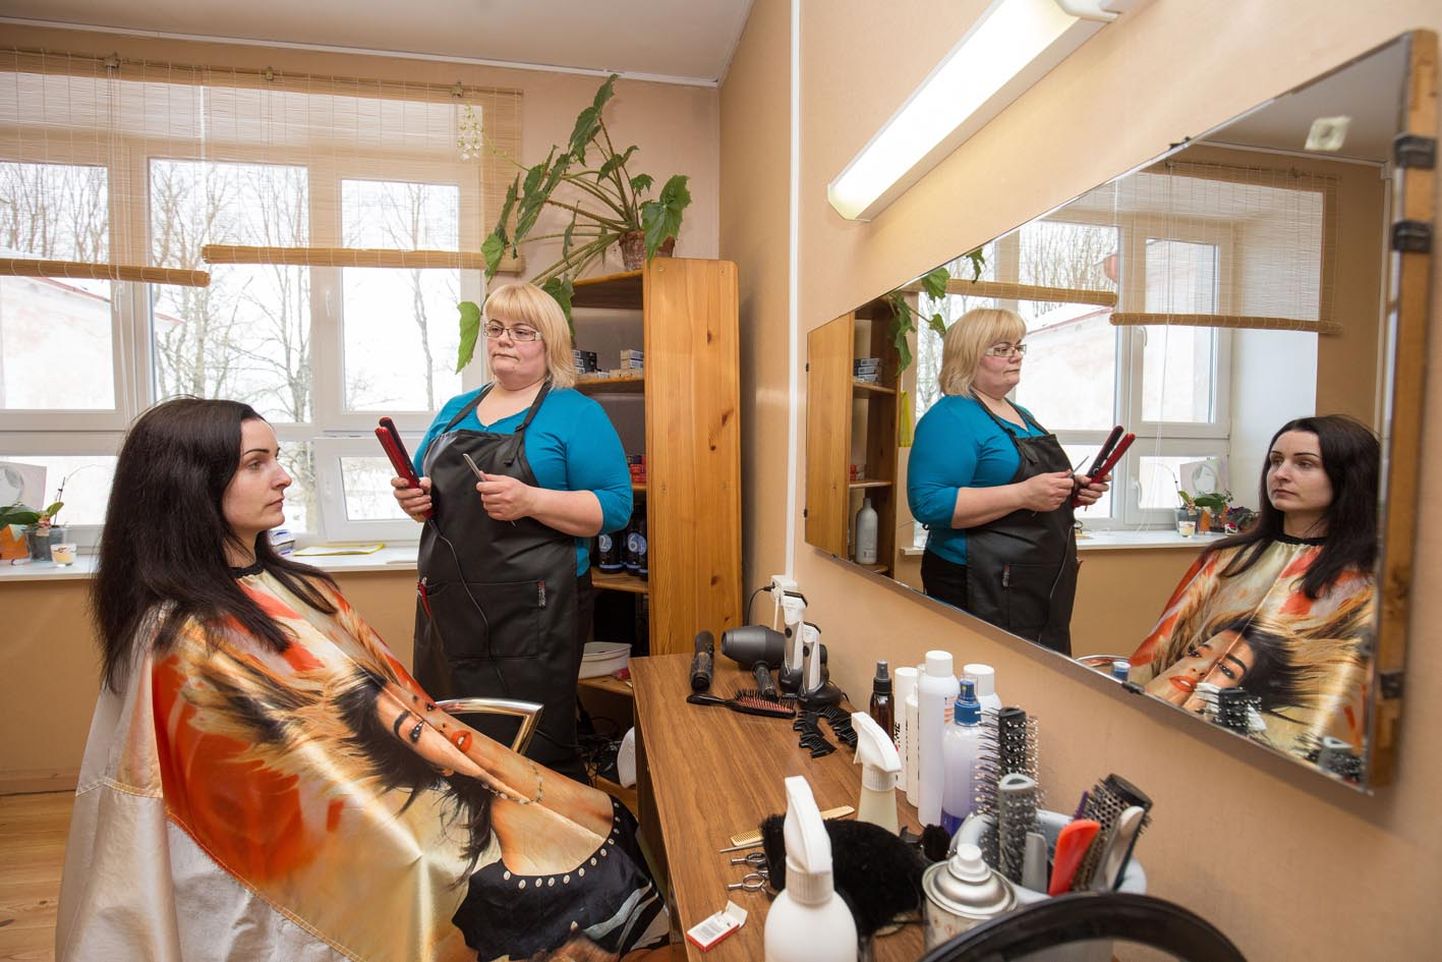 Käravetel 18 aastat juuksurina töötanud Virge Lillevälja on piirkonnas nii hinnatud, et Kati Klausen usaldas teda esimest korda oma juukseid lõikama teiste juttude põhjal ja pole kordagi kahetsenud.